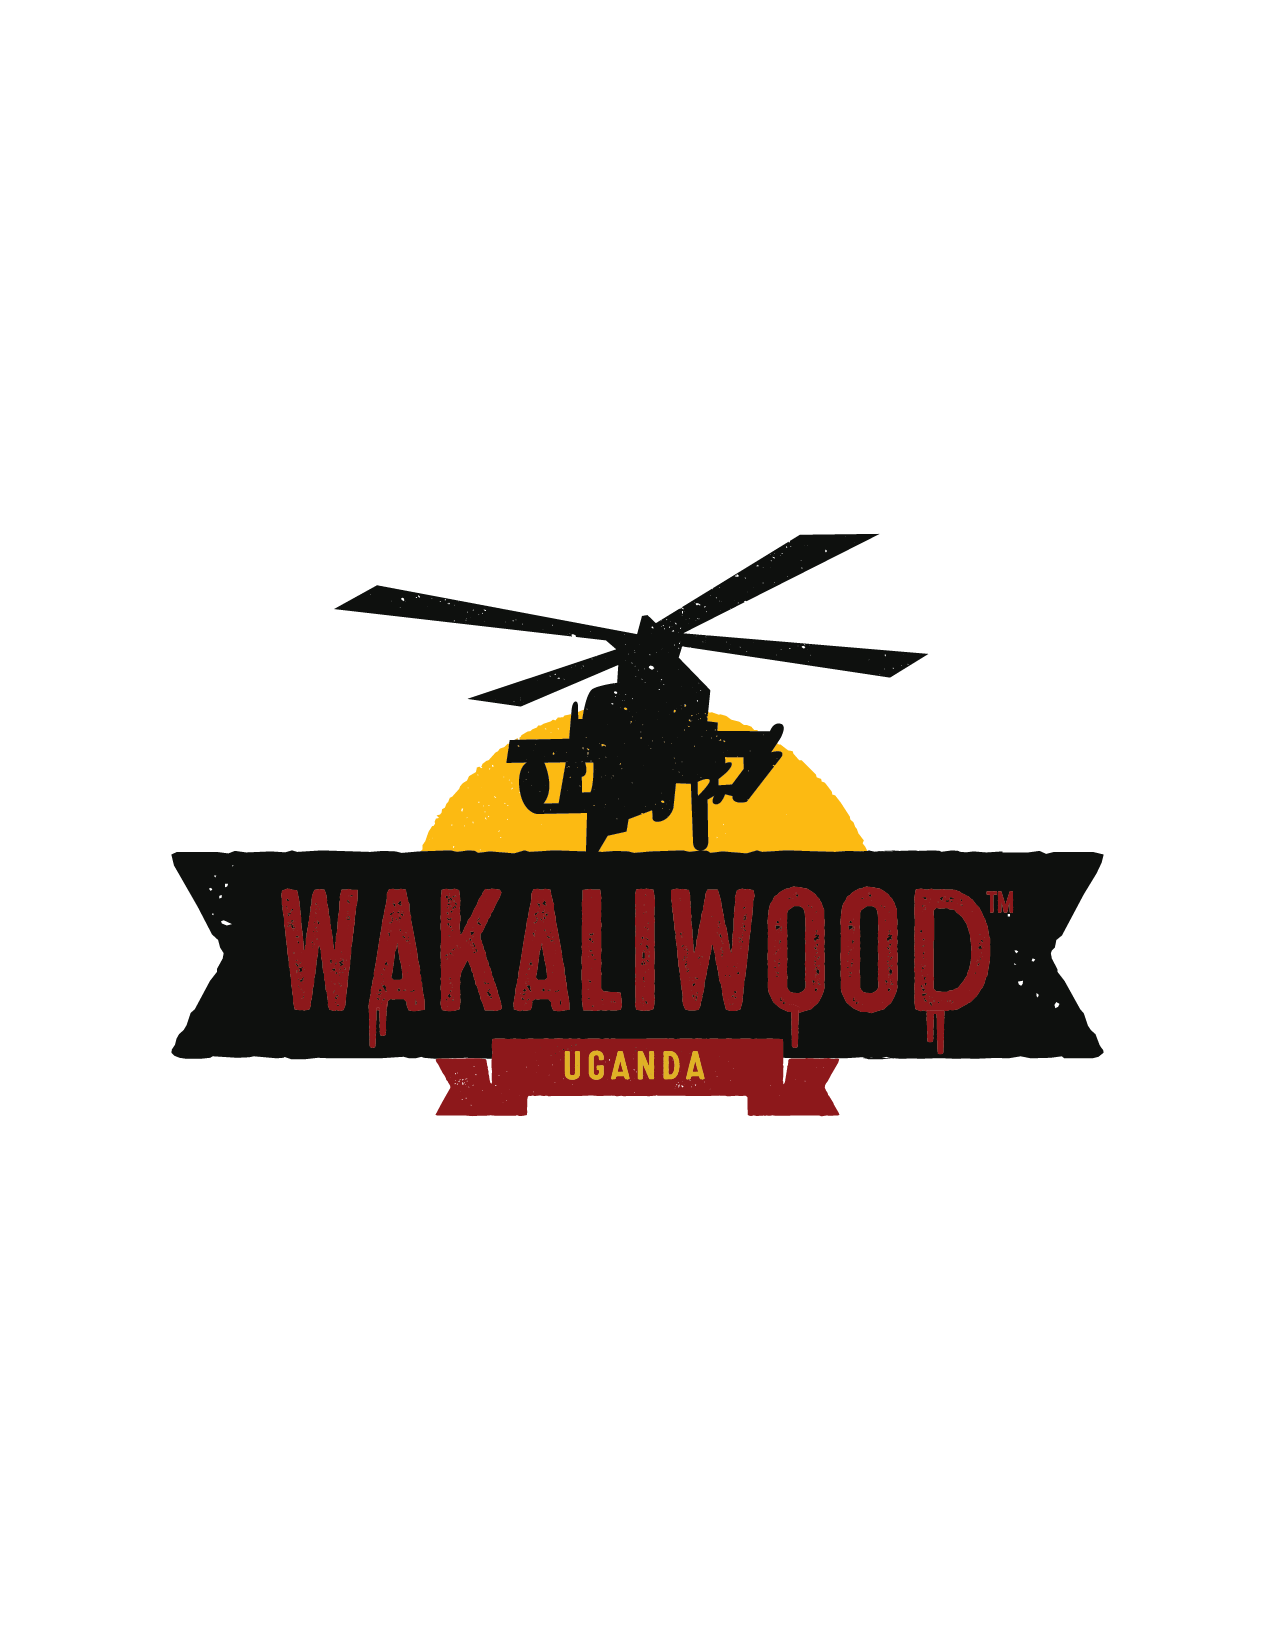 Wakaliwood Supa Store